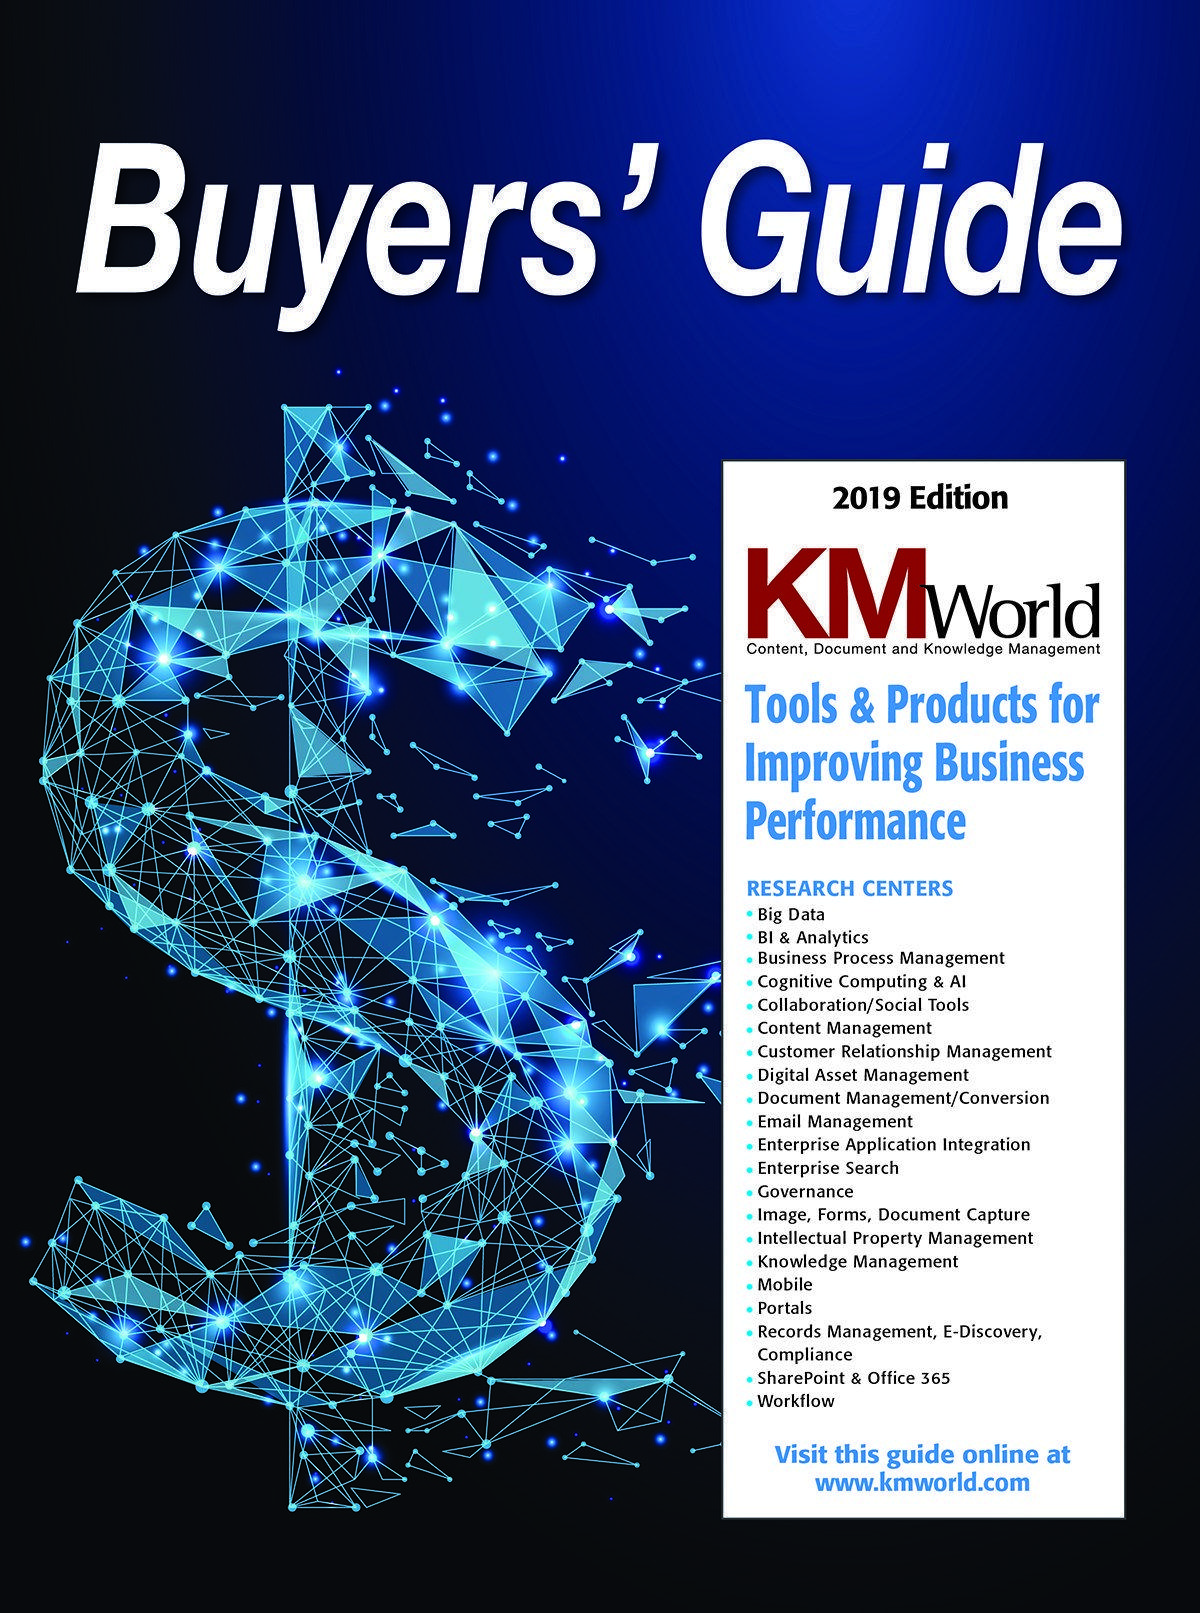 KMWorld Logo - Knowledge Management, Content Management, SharePoint - KMWorld Magazine